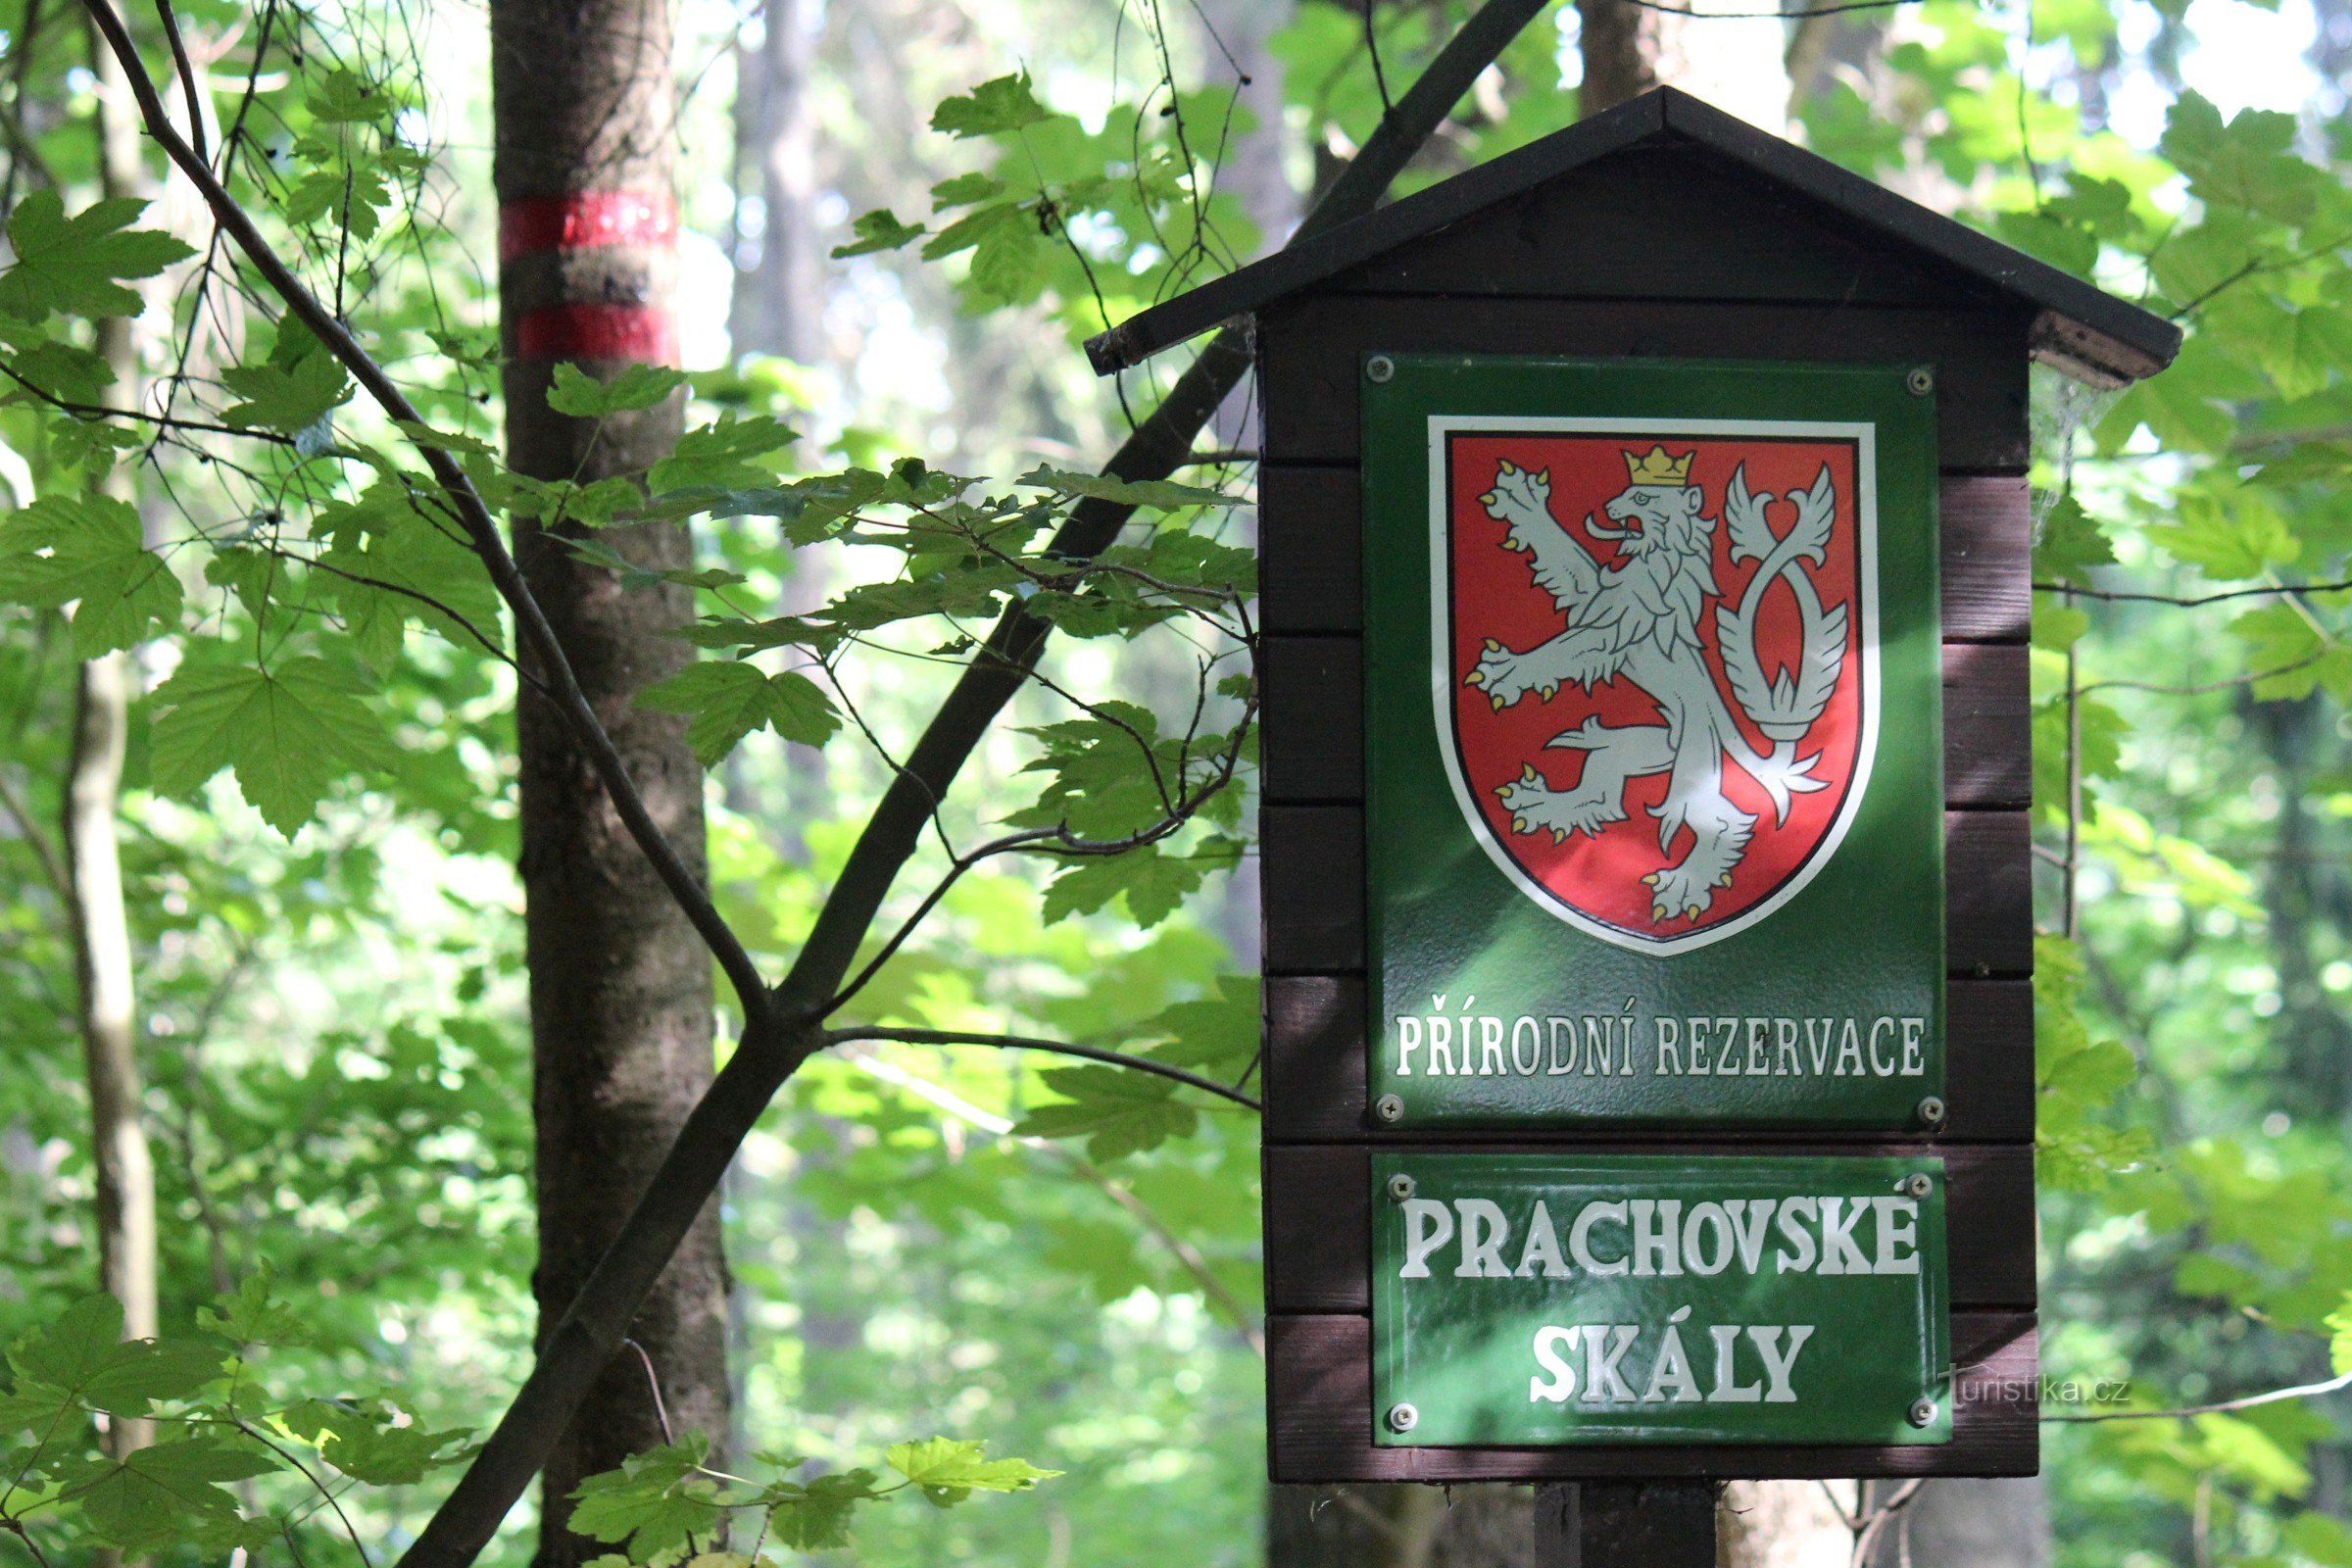 Prachovské rotsen in het Tsjechische Paradijs